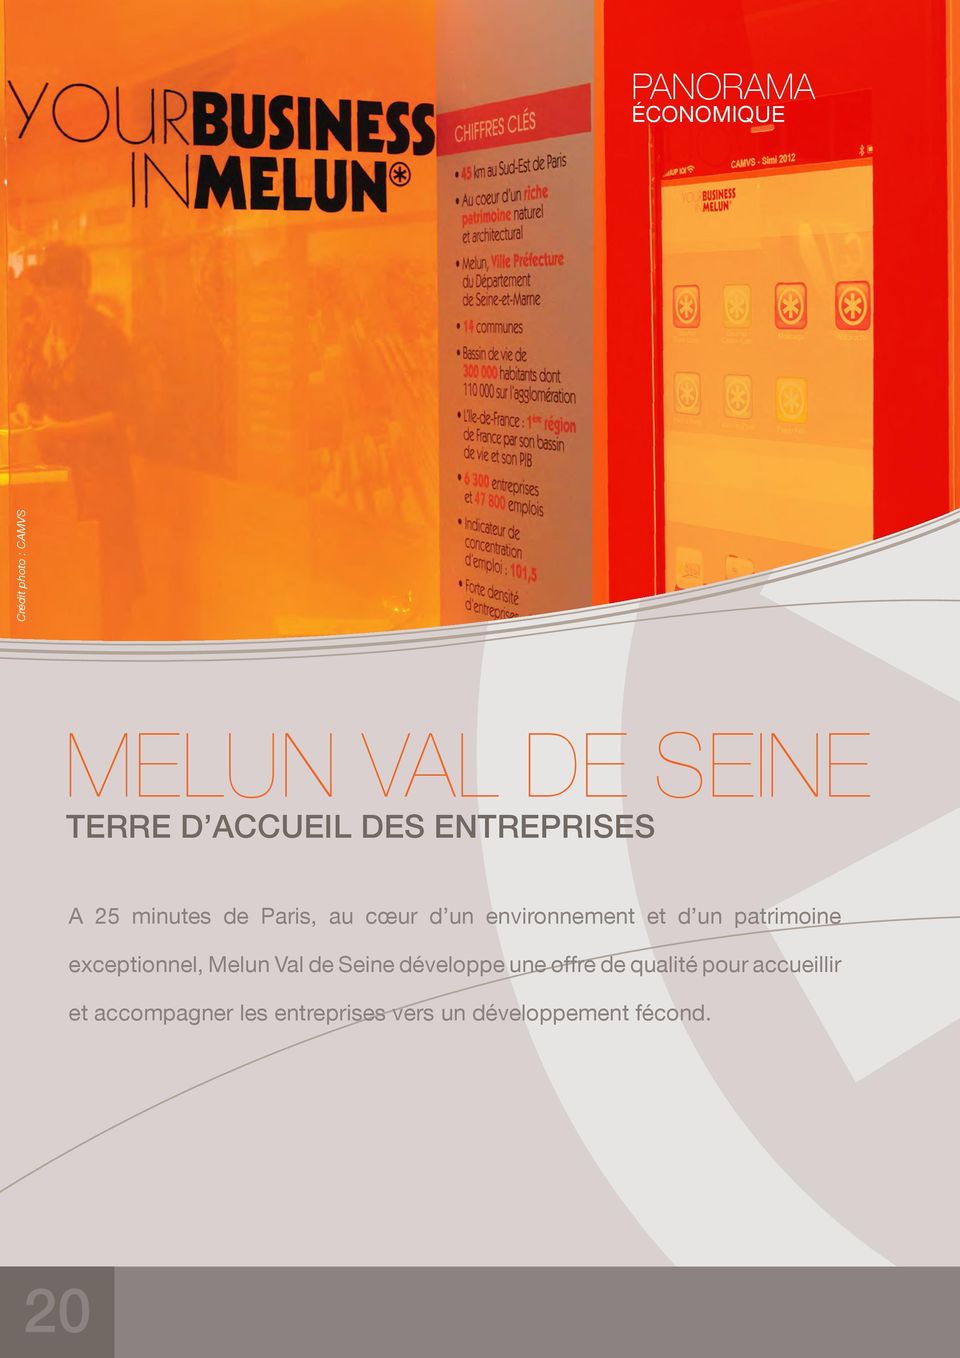 patrimoine exceptionnel, Melun Val de Seine développe une offre de qualité